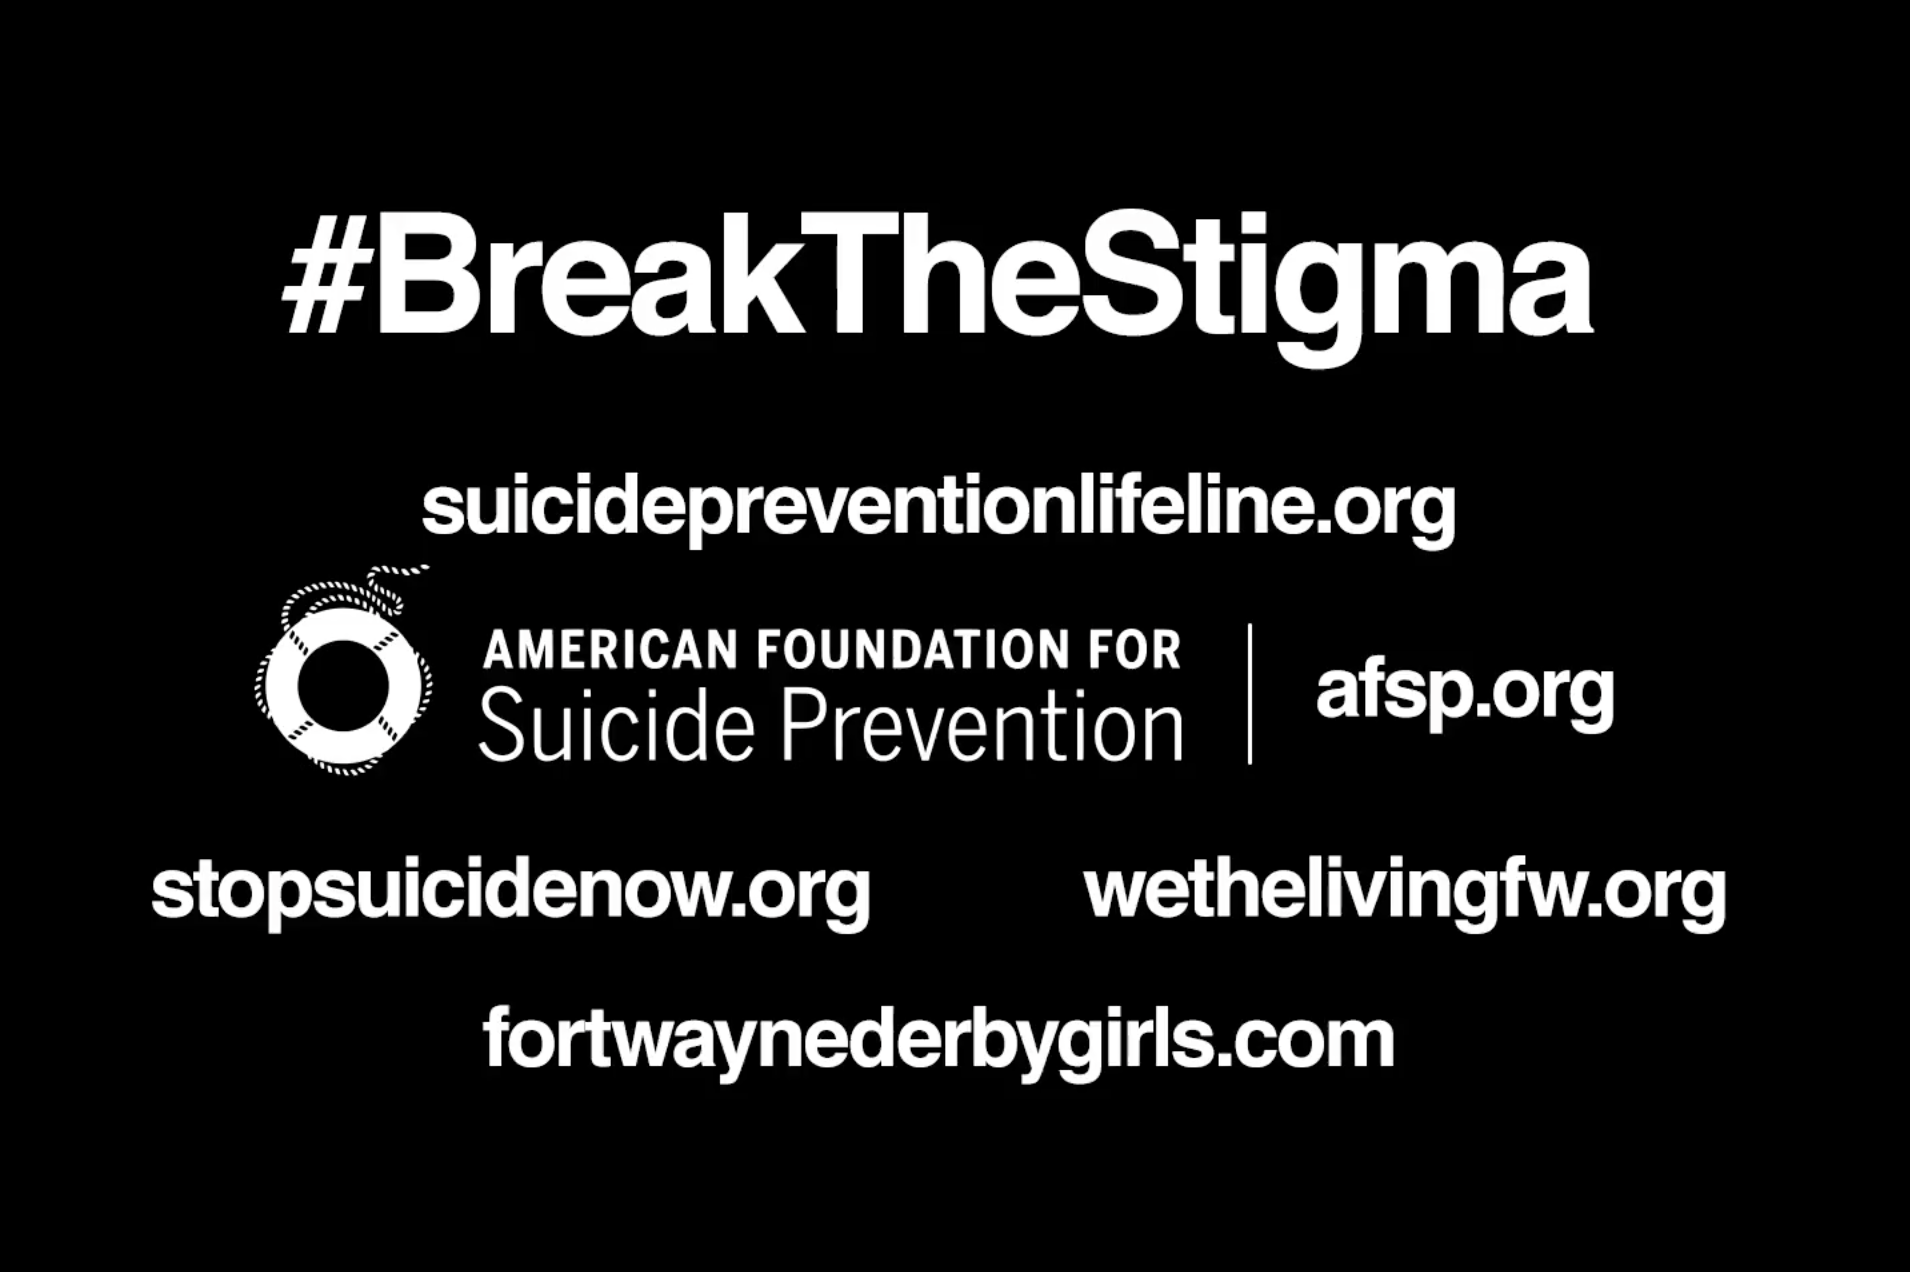 Fort Wayne Derby Girls PSA – Suicide Prevention